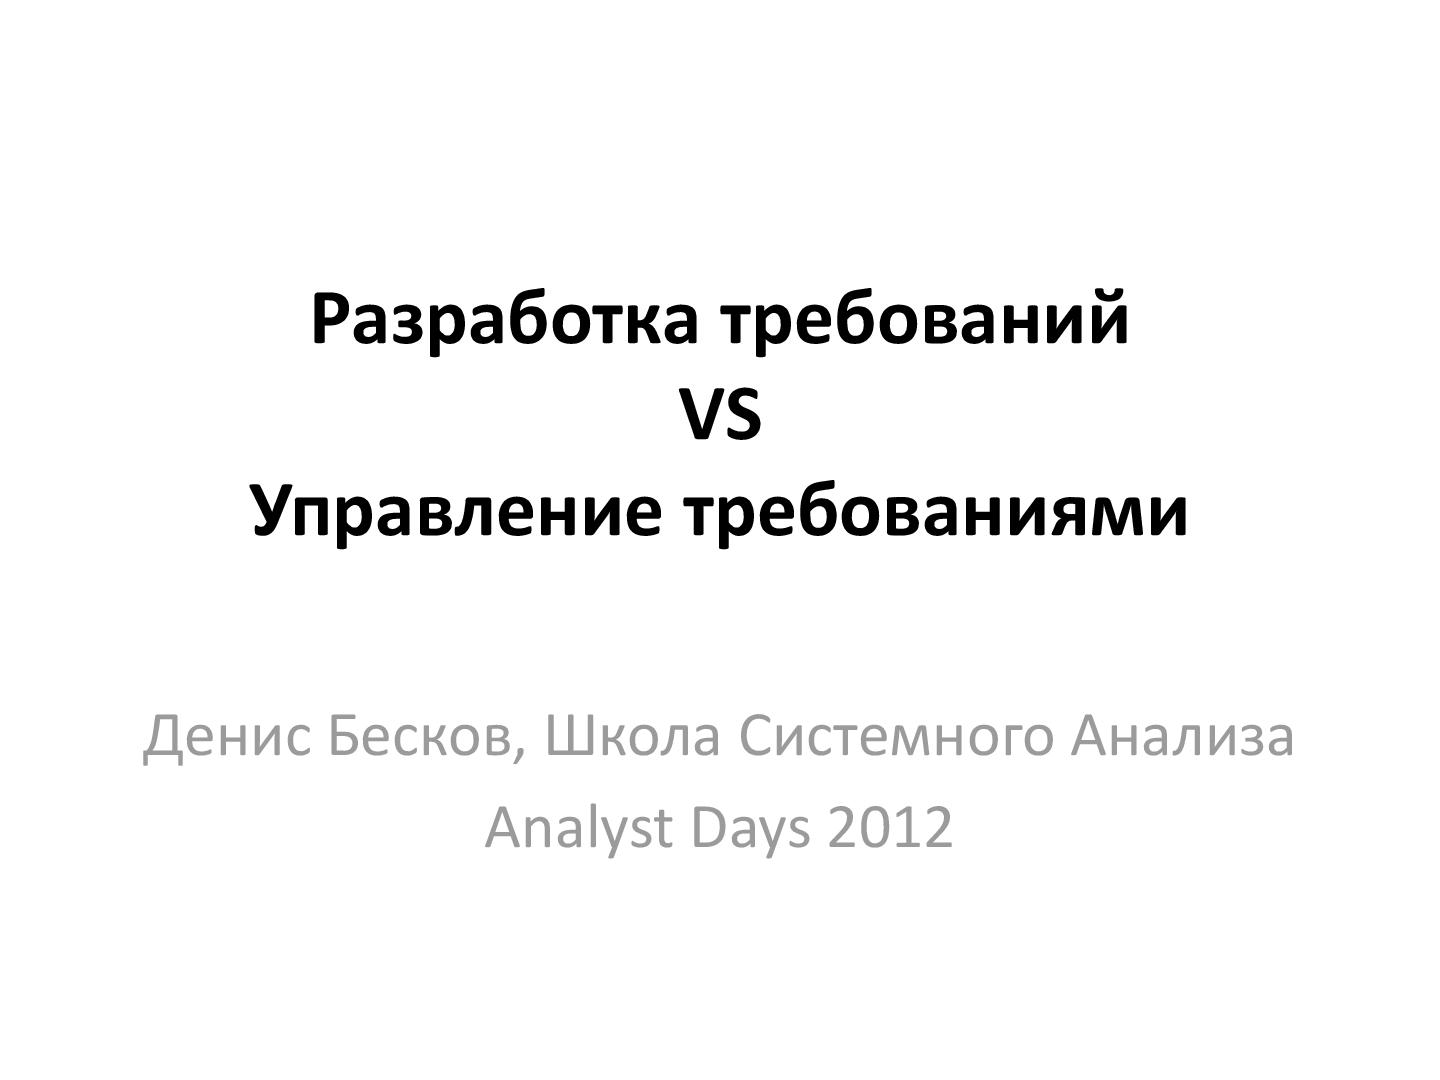 Файл:Управление требованиями VS Разработка требований. Принципы и инструменты (Денис Бесков, AnalystDays-2012).pdf